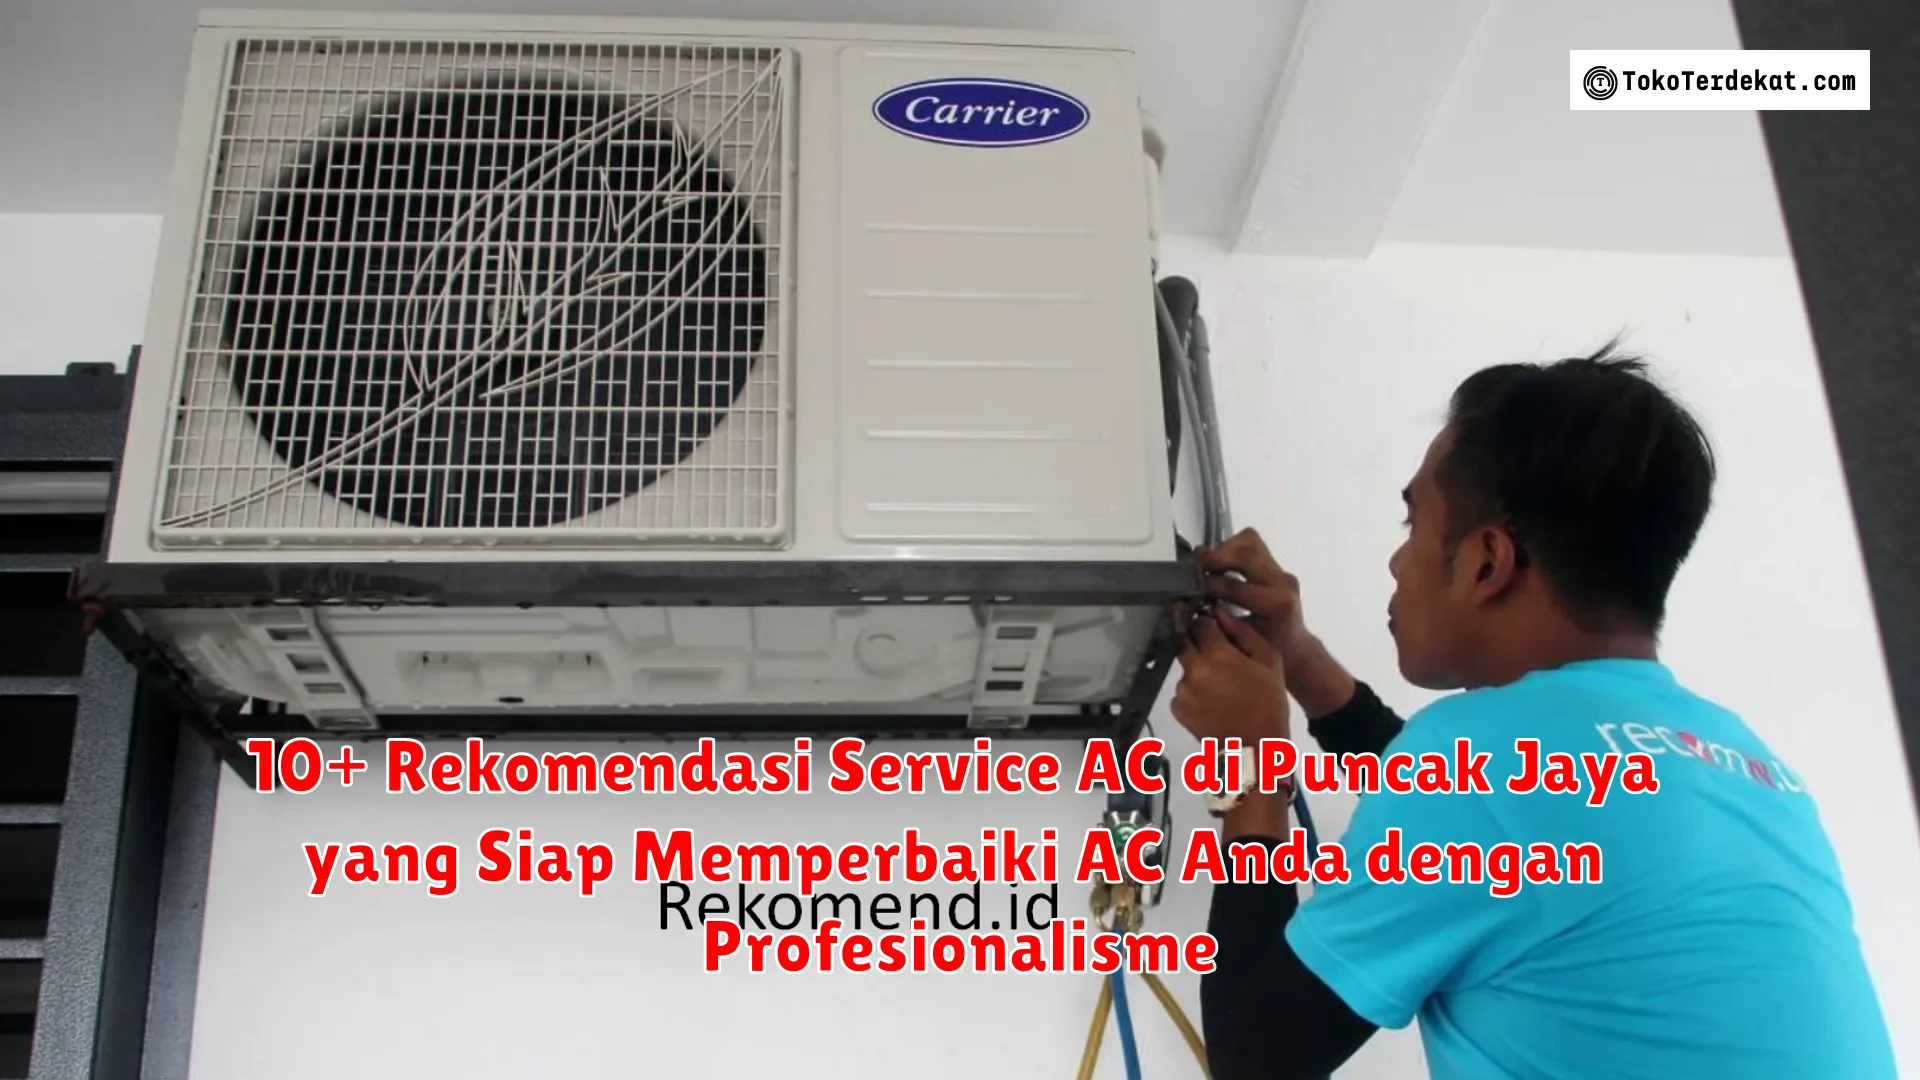 10+ Rekomendasi Service AC di Puncak Jaya yang Siap Memperbaiki AC Anda dengan Profesionalisme